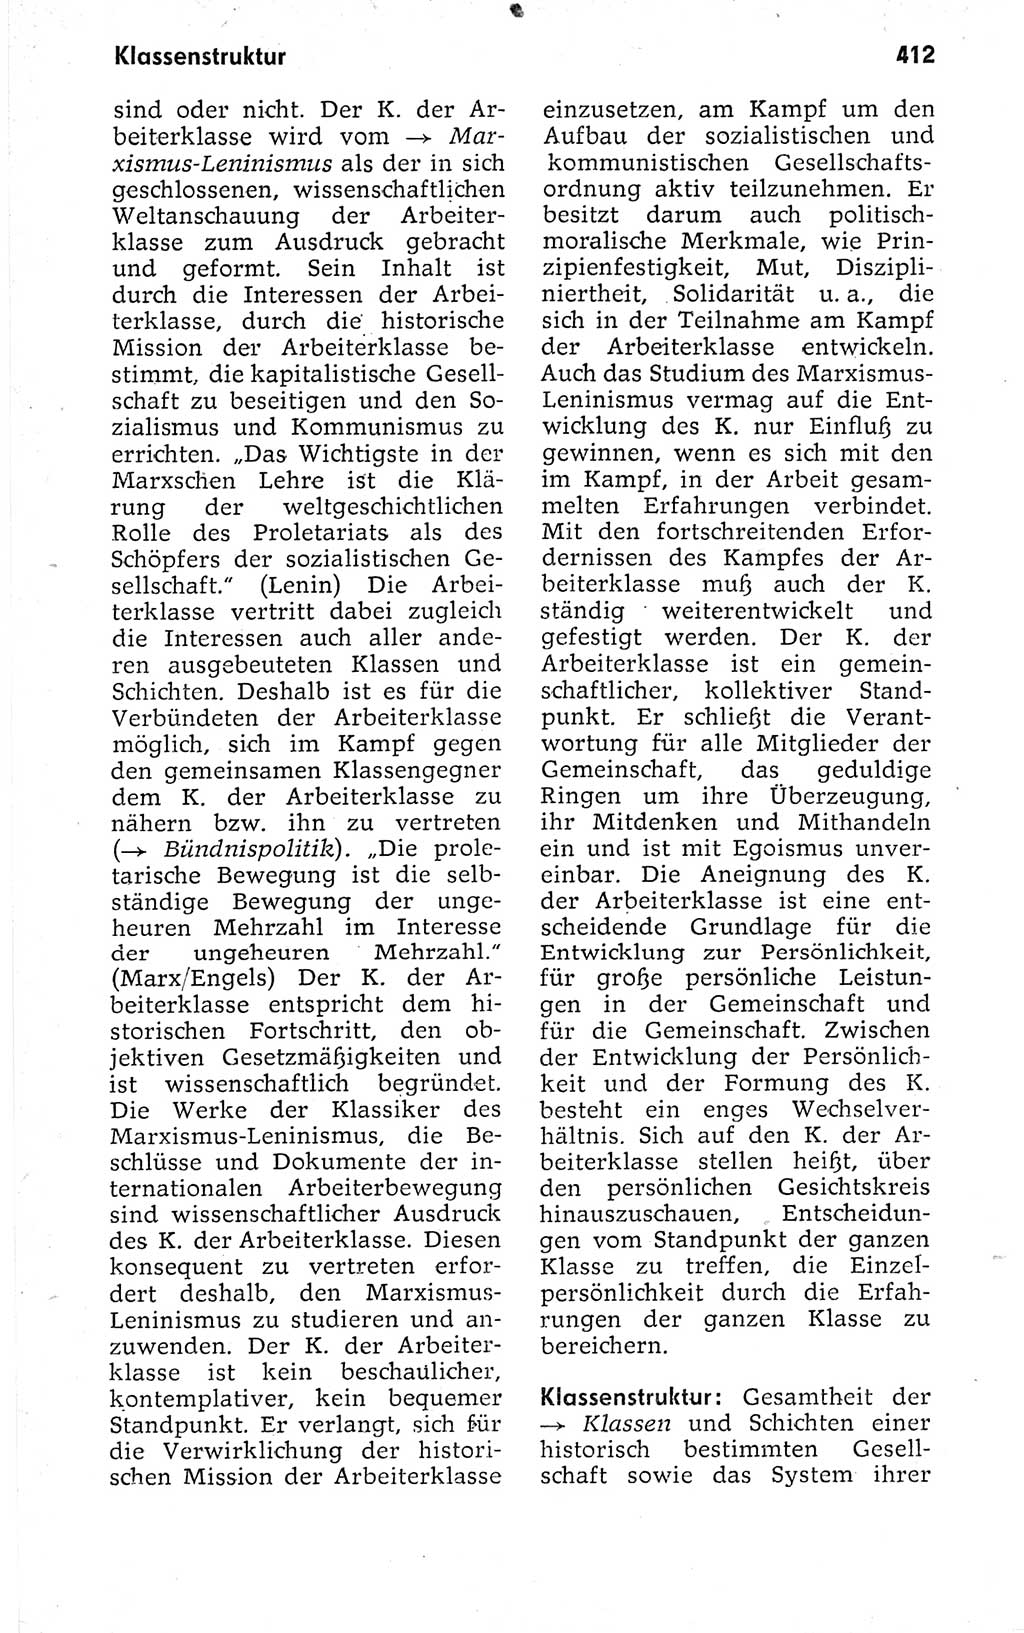 Kleines politisches Wörterbuch [Deutsche Demokratische Republik (DDR)] 1973, Seite 412 (Kl. pol. Wb. DDR 1973, S. 412)